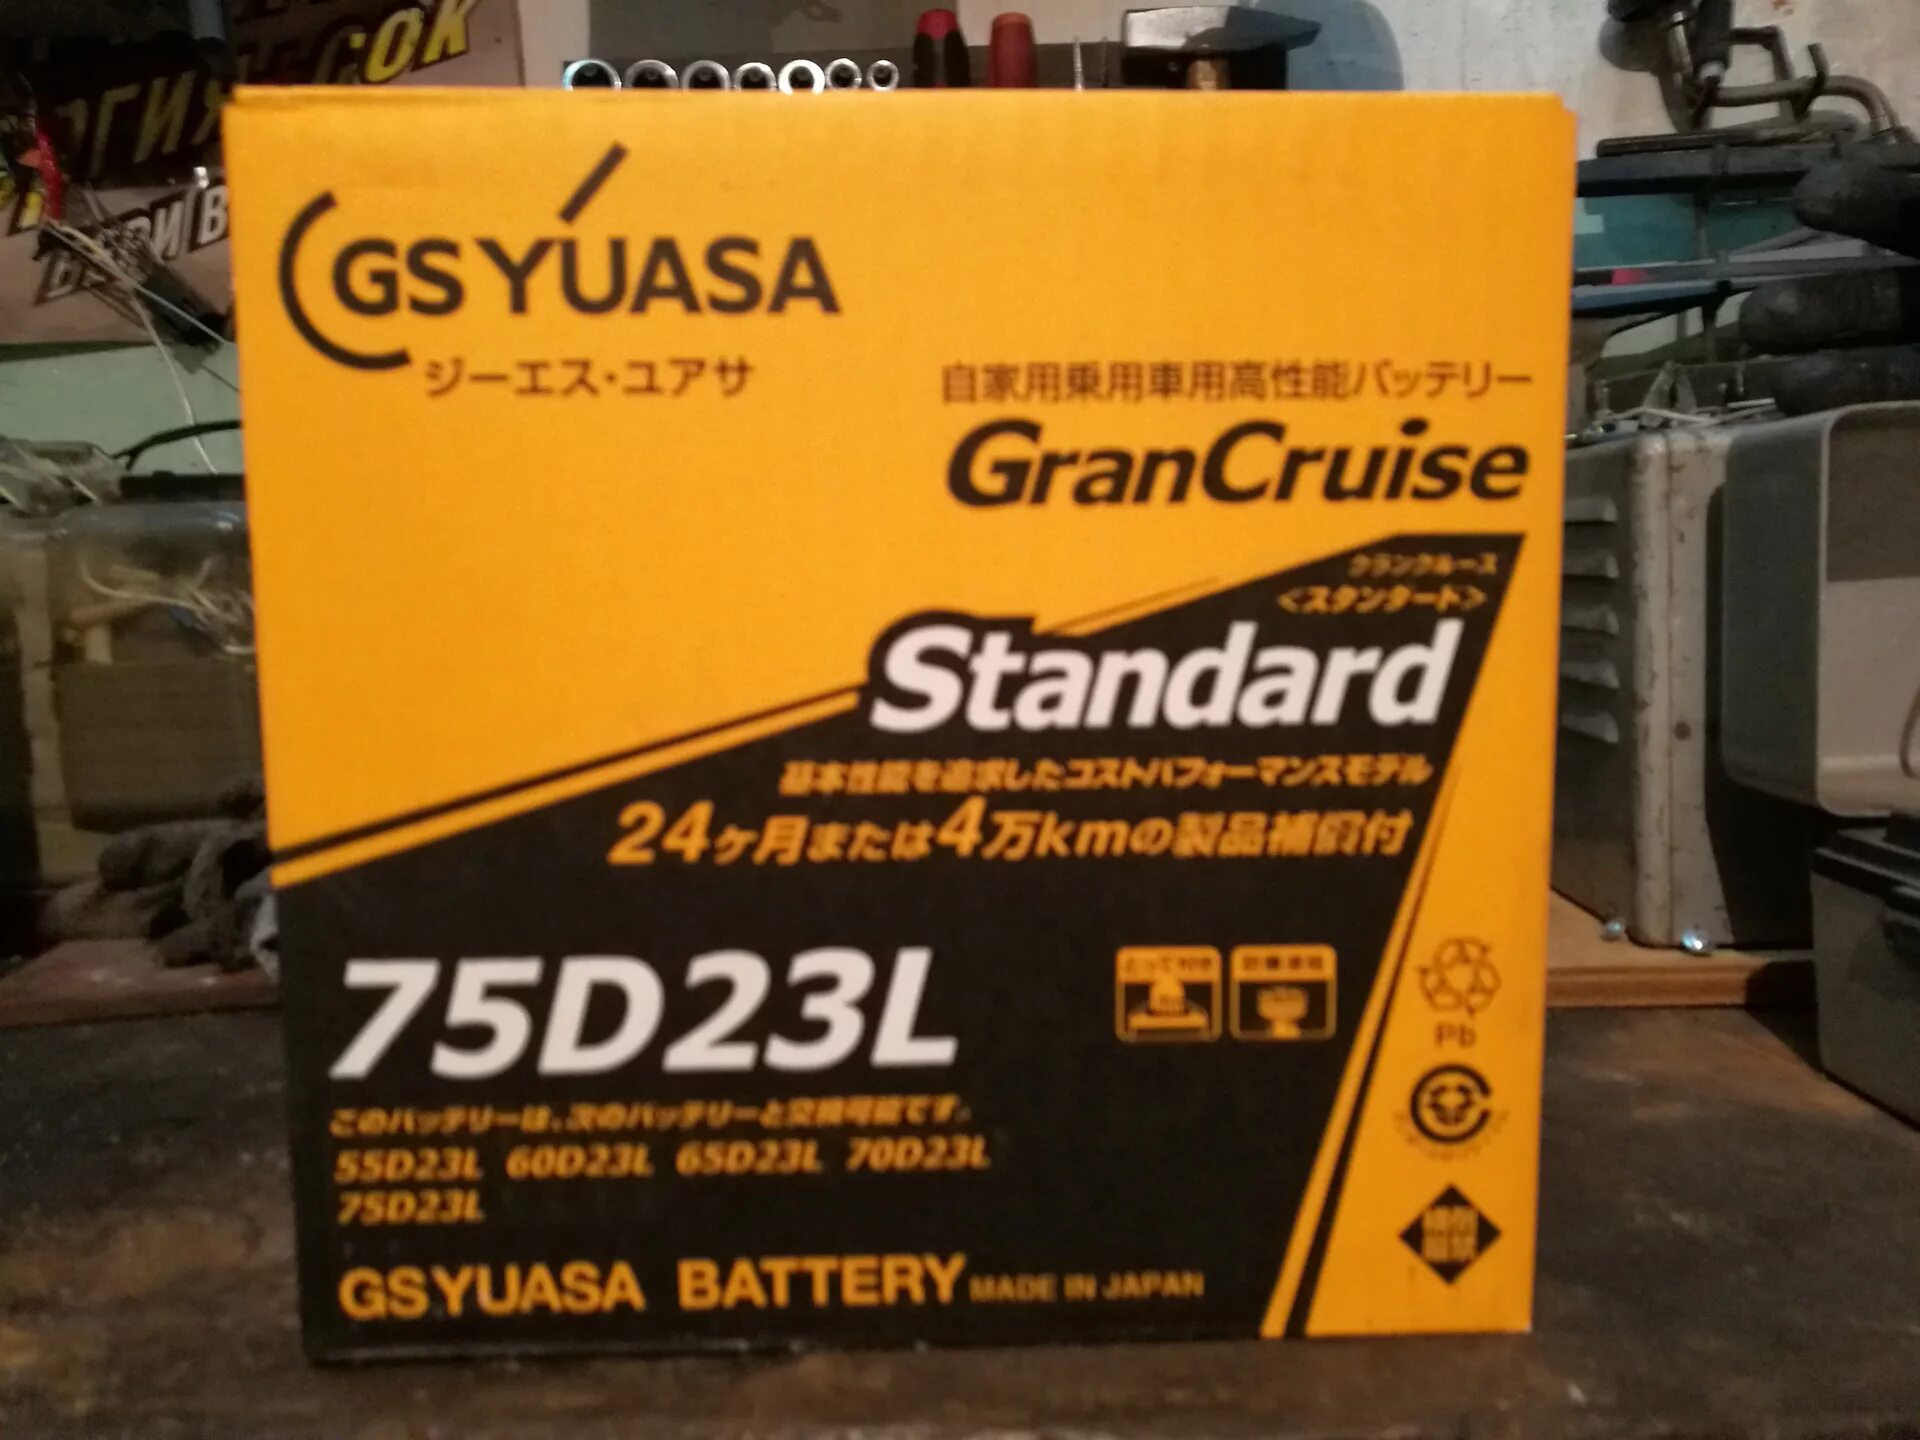 GS Yuasa 55d23. GRANCRUISE Standard 75d23l аккумулятор. GS Yuasa 55d23 MF. Аккумулятор GS Yuasa GST 75d23l отзывы.